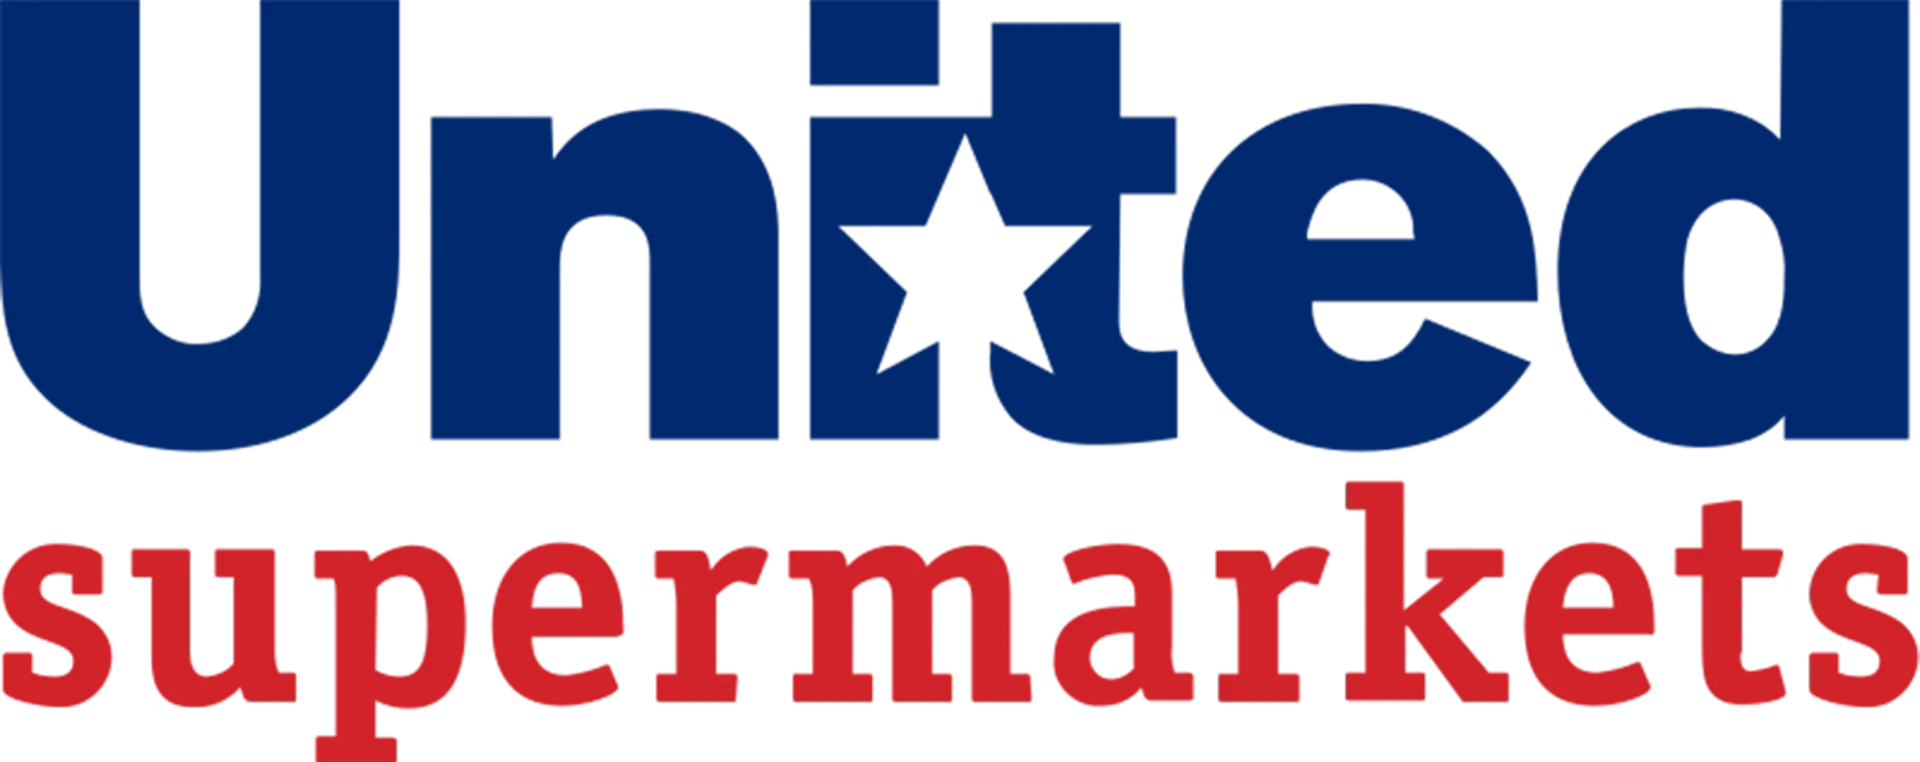 UNITED SUPERMARKET logo